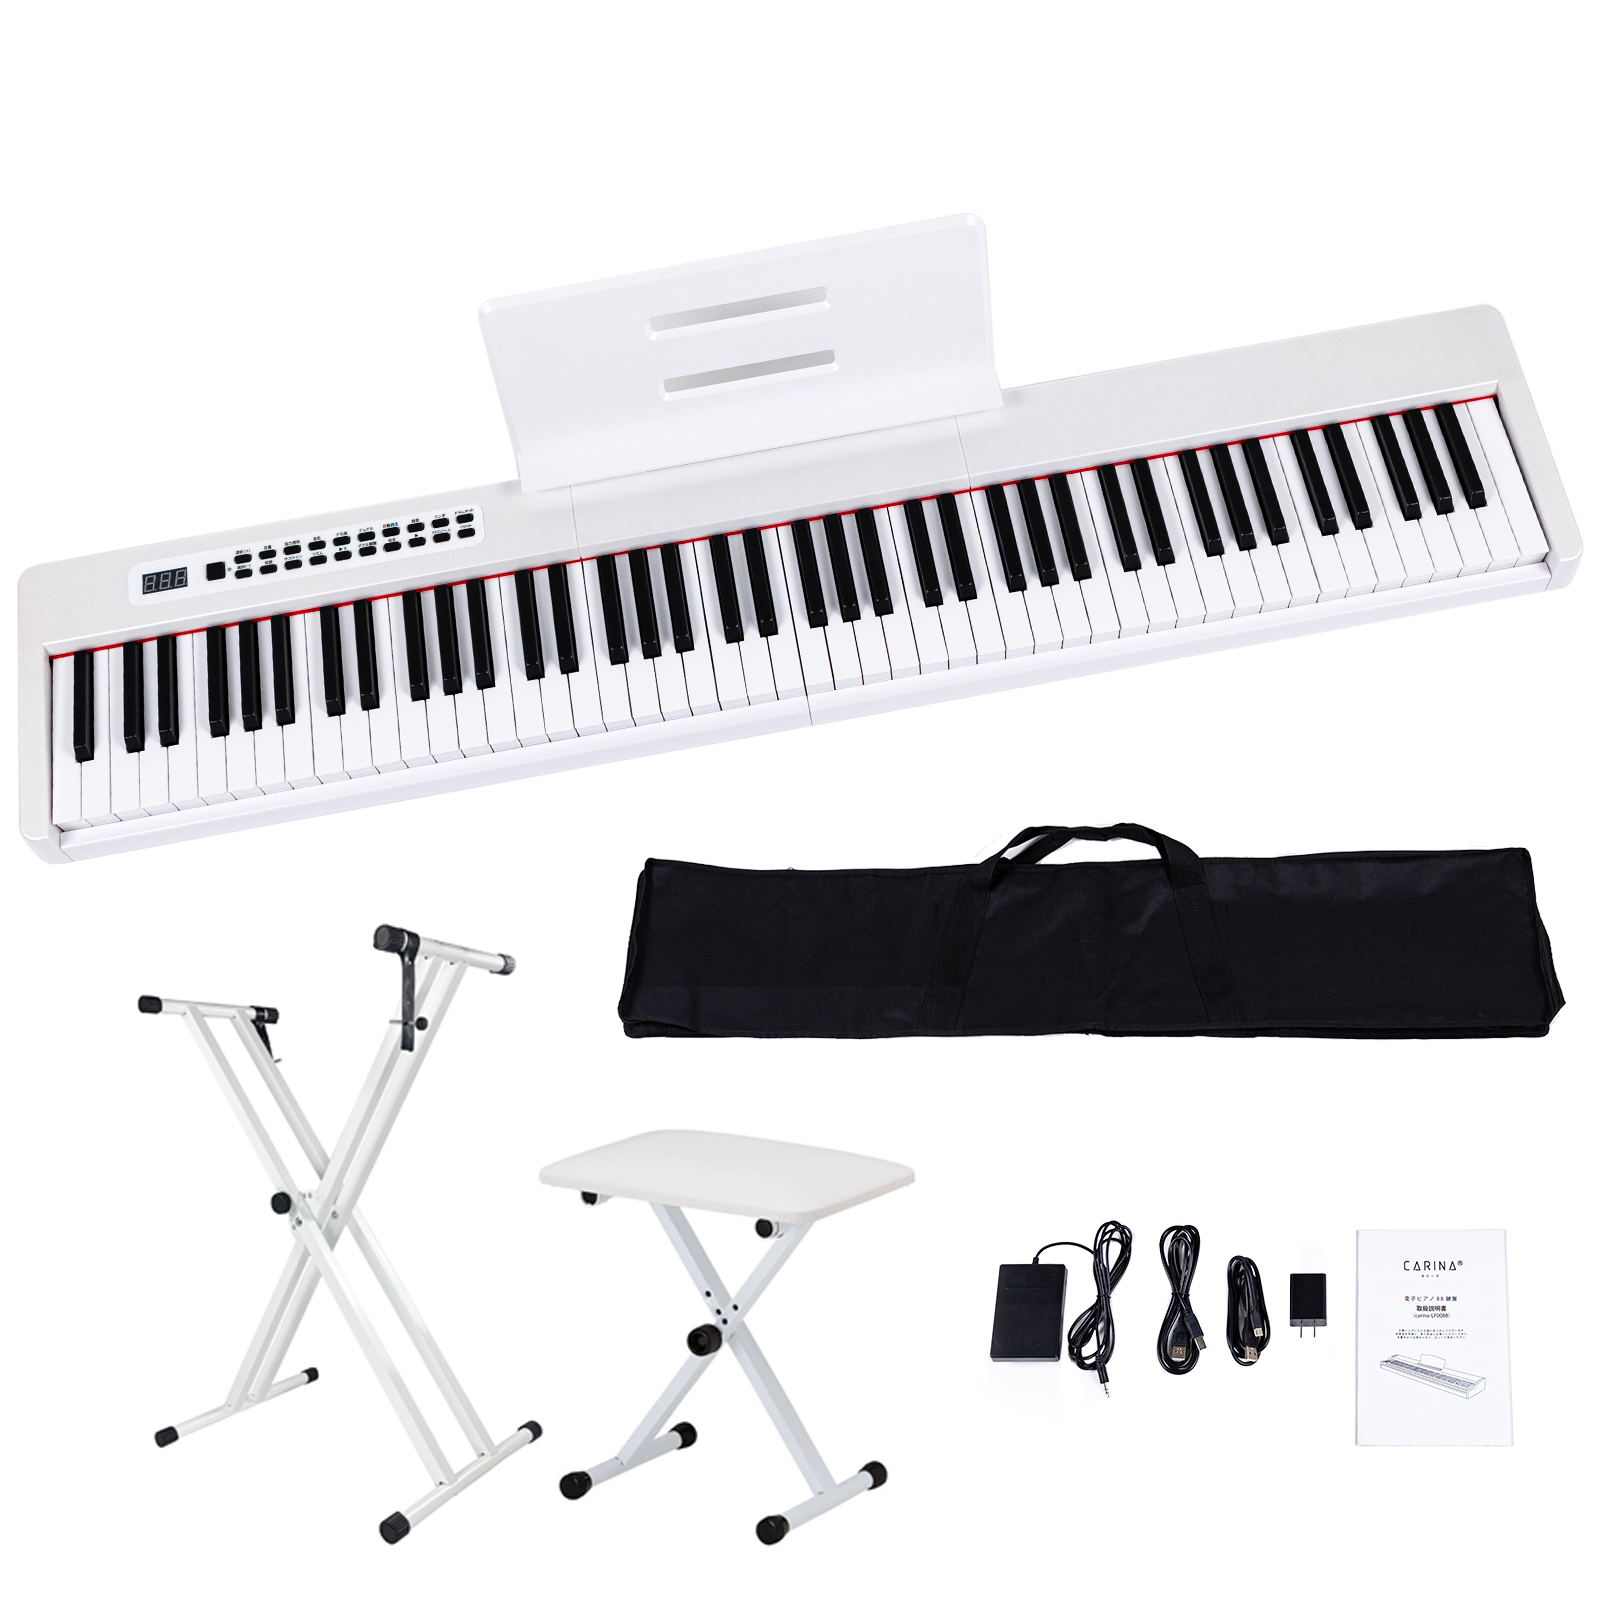 3カラー】電子ピアノ 88鍵盤 スタンド 椅子セット dream音源 充電可能 